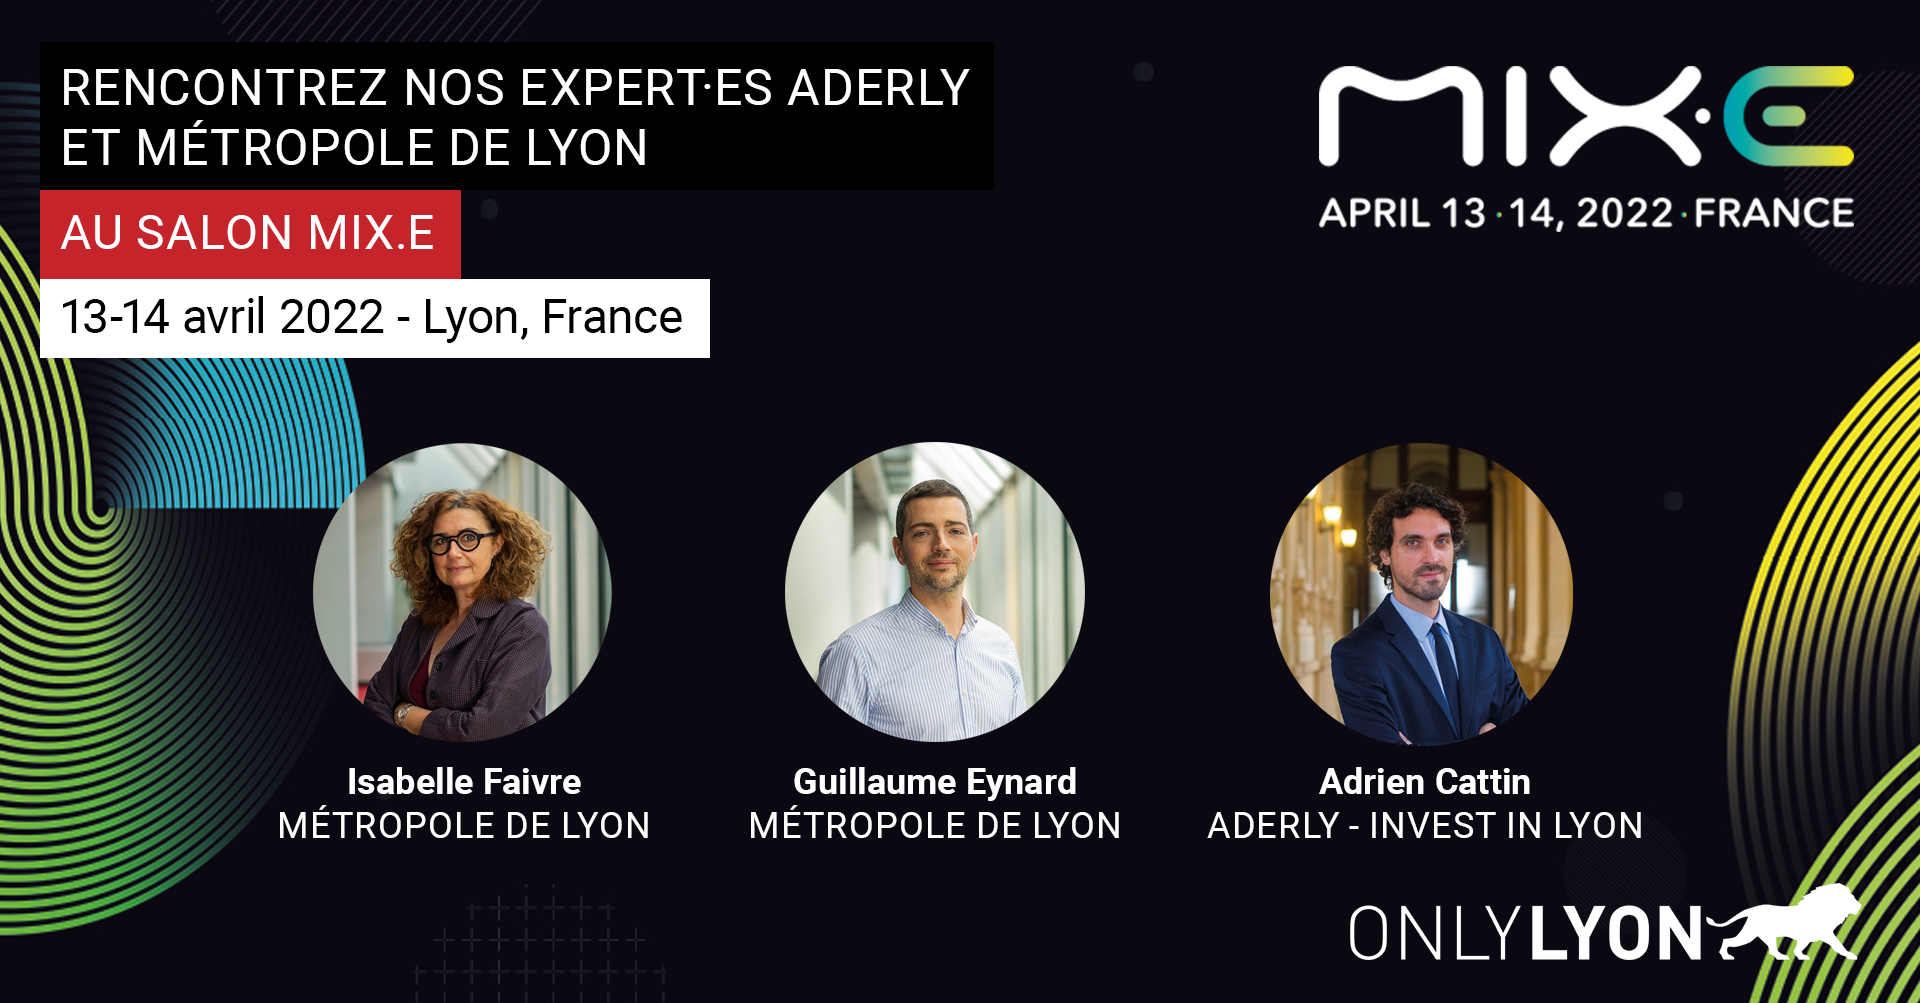 Voir l'événement Nos expert·es de la Métropole de Lyon et de l’Aderly au salon MIX.E 2022 dédié au mix énergétique bas carbone